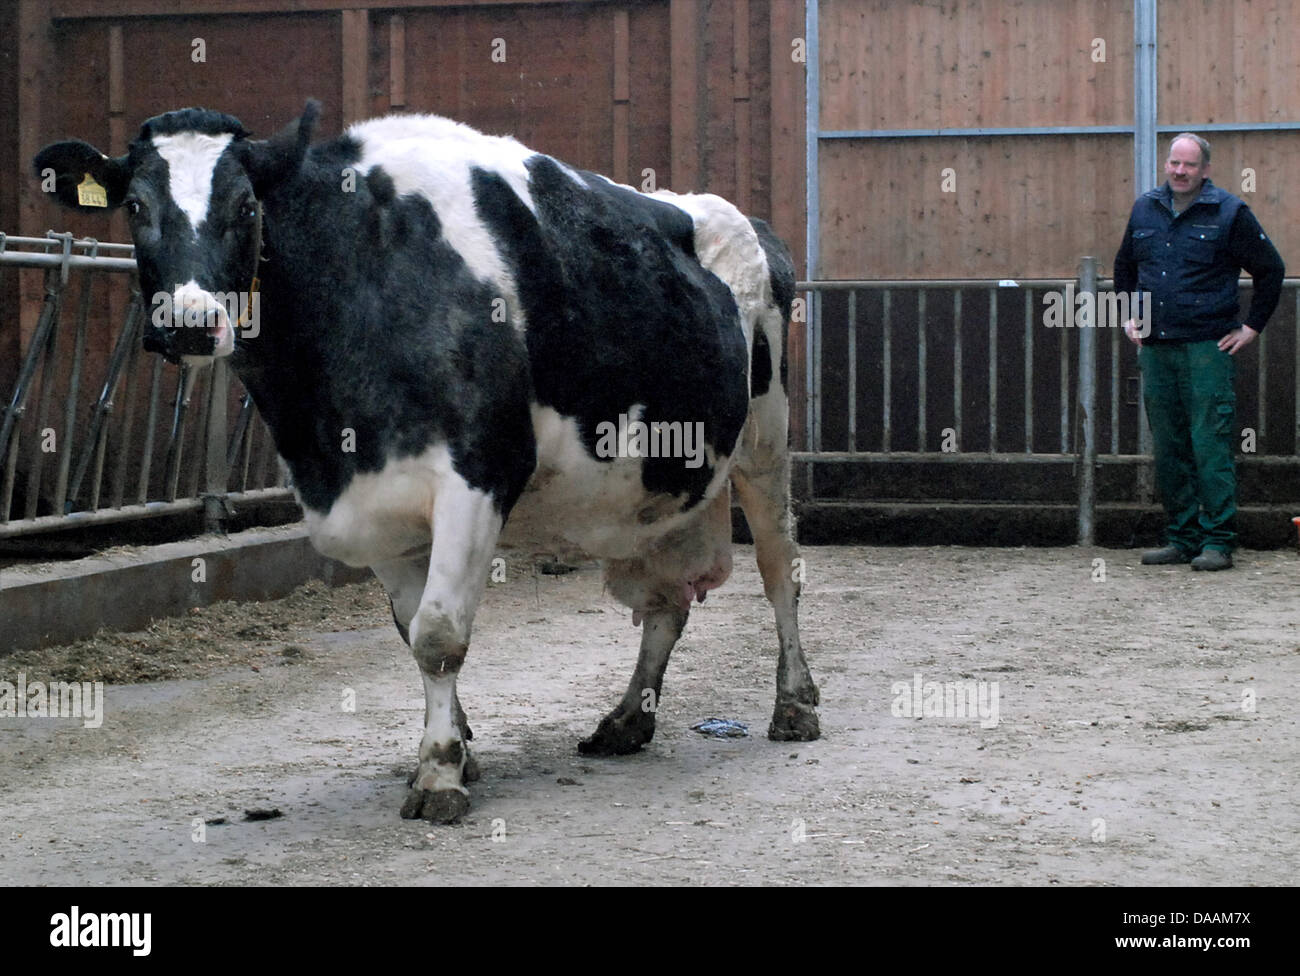 Bauer Alfred Ritter blickt auf seine Lieblings Kuh Thea in ihrem Stall in Barfoerde, Deutschland, 3. Februar 2011. Milchkuh Thea gebärt zum 14. Mal im Alter von 17, das ist ungewöhnlich für eine deutsche Bauernhof Kuh. Die meisten der Zeit, endet das Leben einer Milchkuh im Alter von 5 oder 6. Foto: Peer Koerner Stockfoto